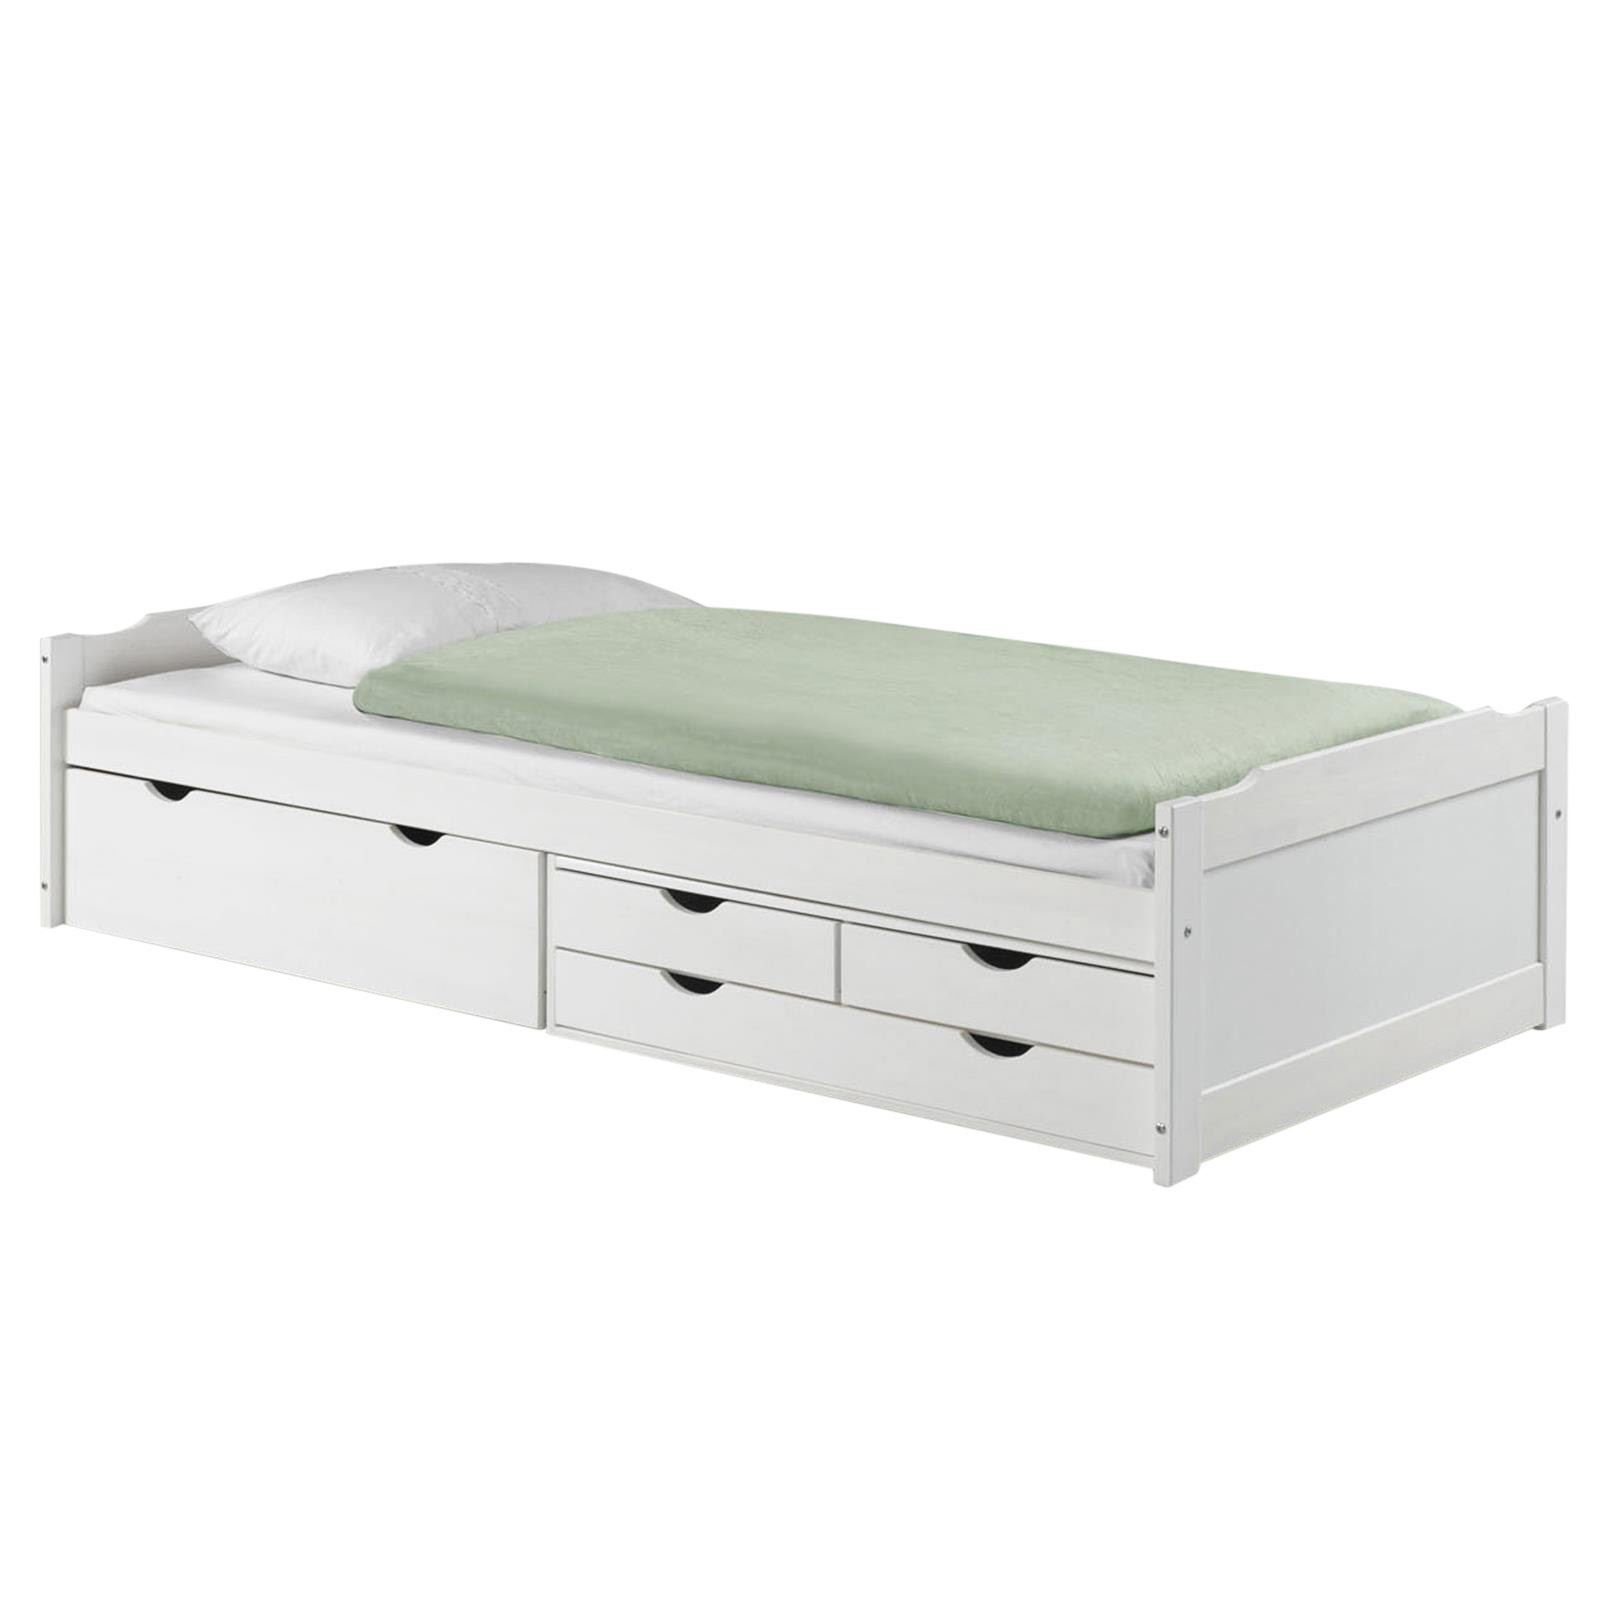 IDIMEX massiv ANDREA, Kiefer mit 4 Schubladen in Funktionsbett Bett weiss Bett mit Stauraum aus weiß Hol